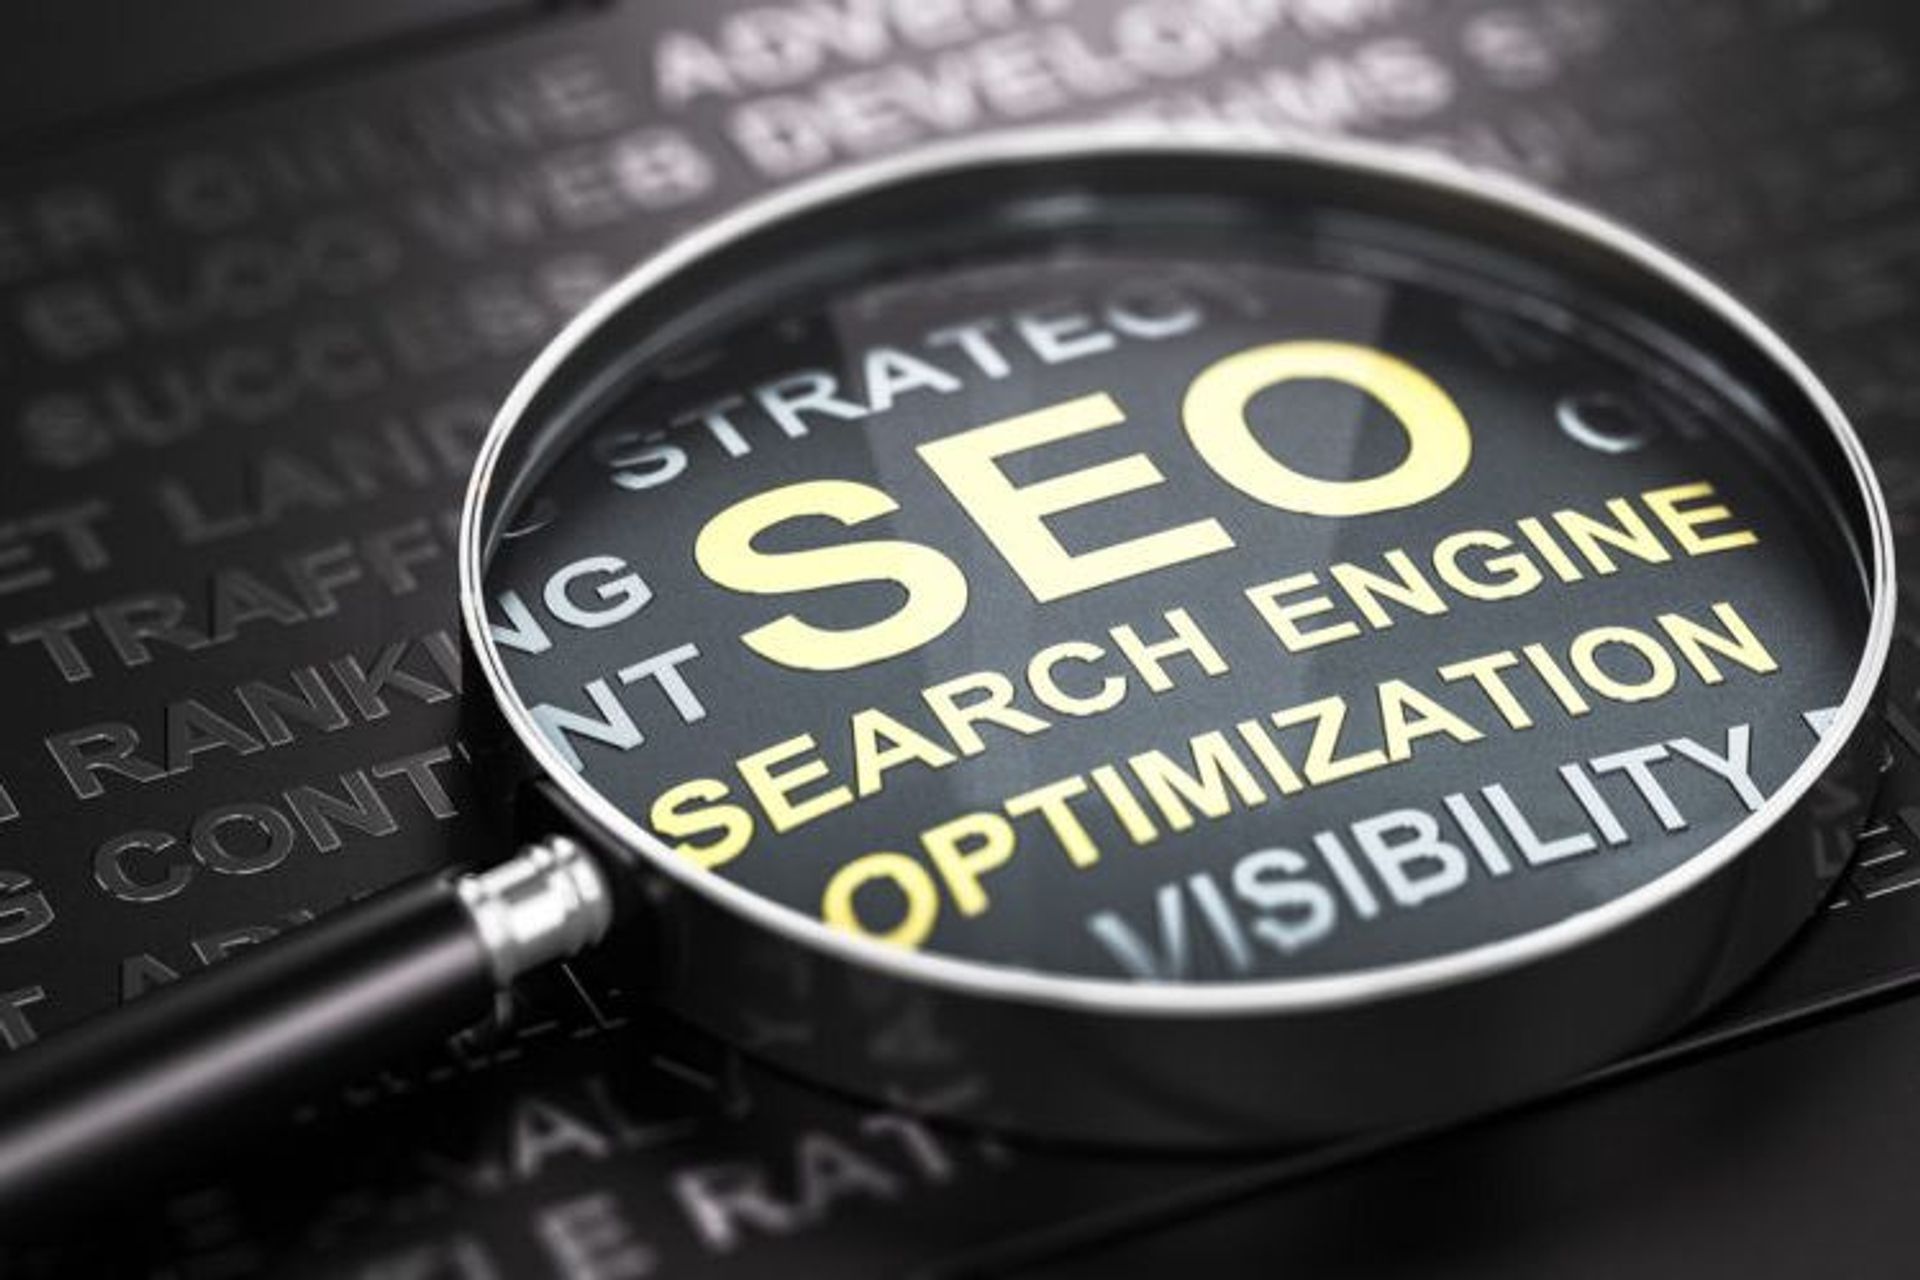 Thuật ngữ "Tối ưu hóa Công cụ Tìm kiếm" (trong tiếng Anh là "Search Engine Optimization", viết tắt là SEO) có nghĩa là tất cả các hoạt động nhằm cải thiện khả năng quét, lập chỉ mục và định vị thông tin hoặc nội dung có trong một trang web.